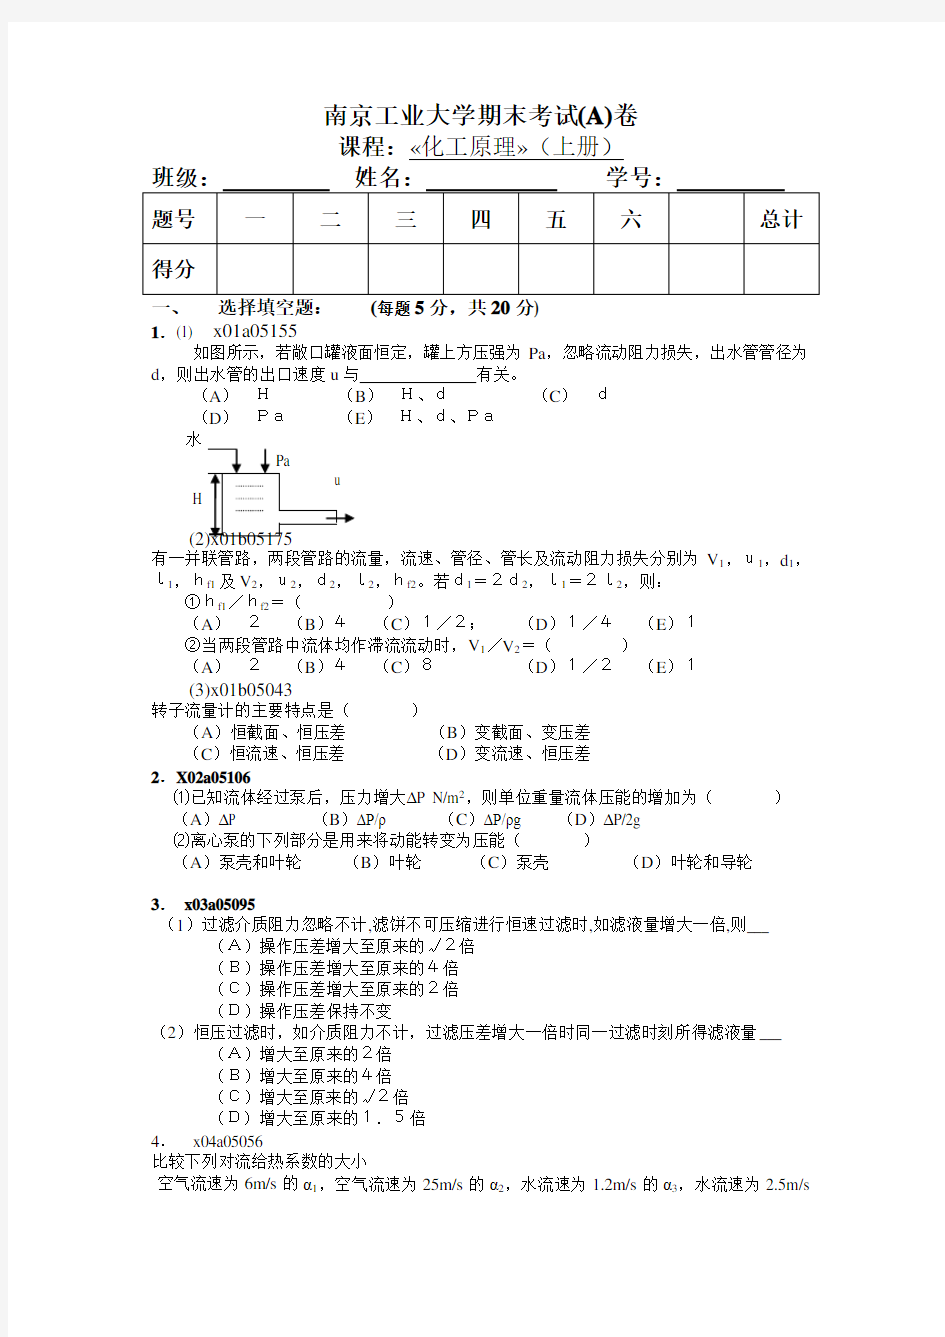 南京工业大学期末考试(A)卷